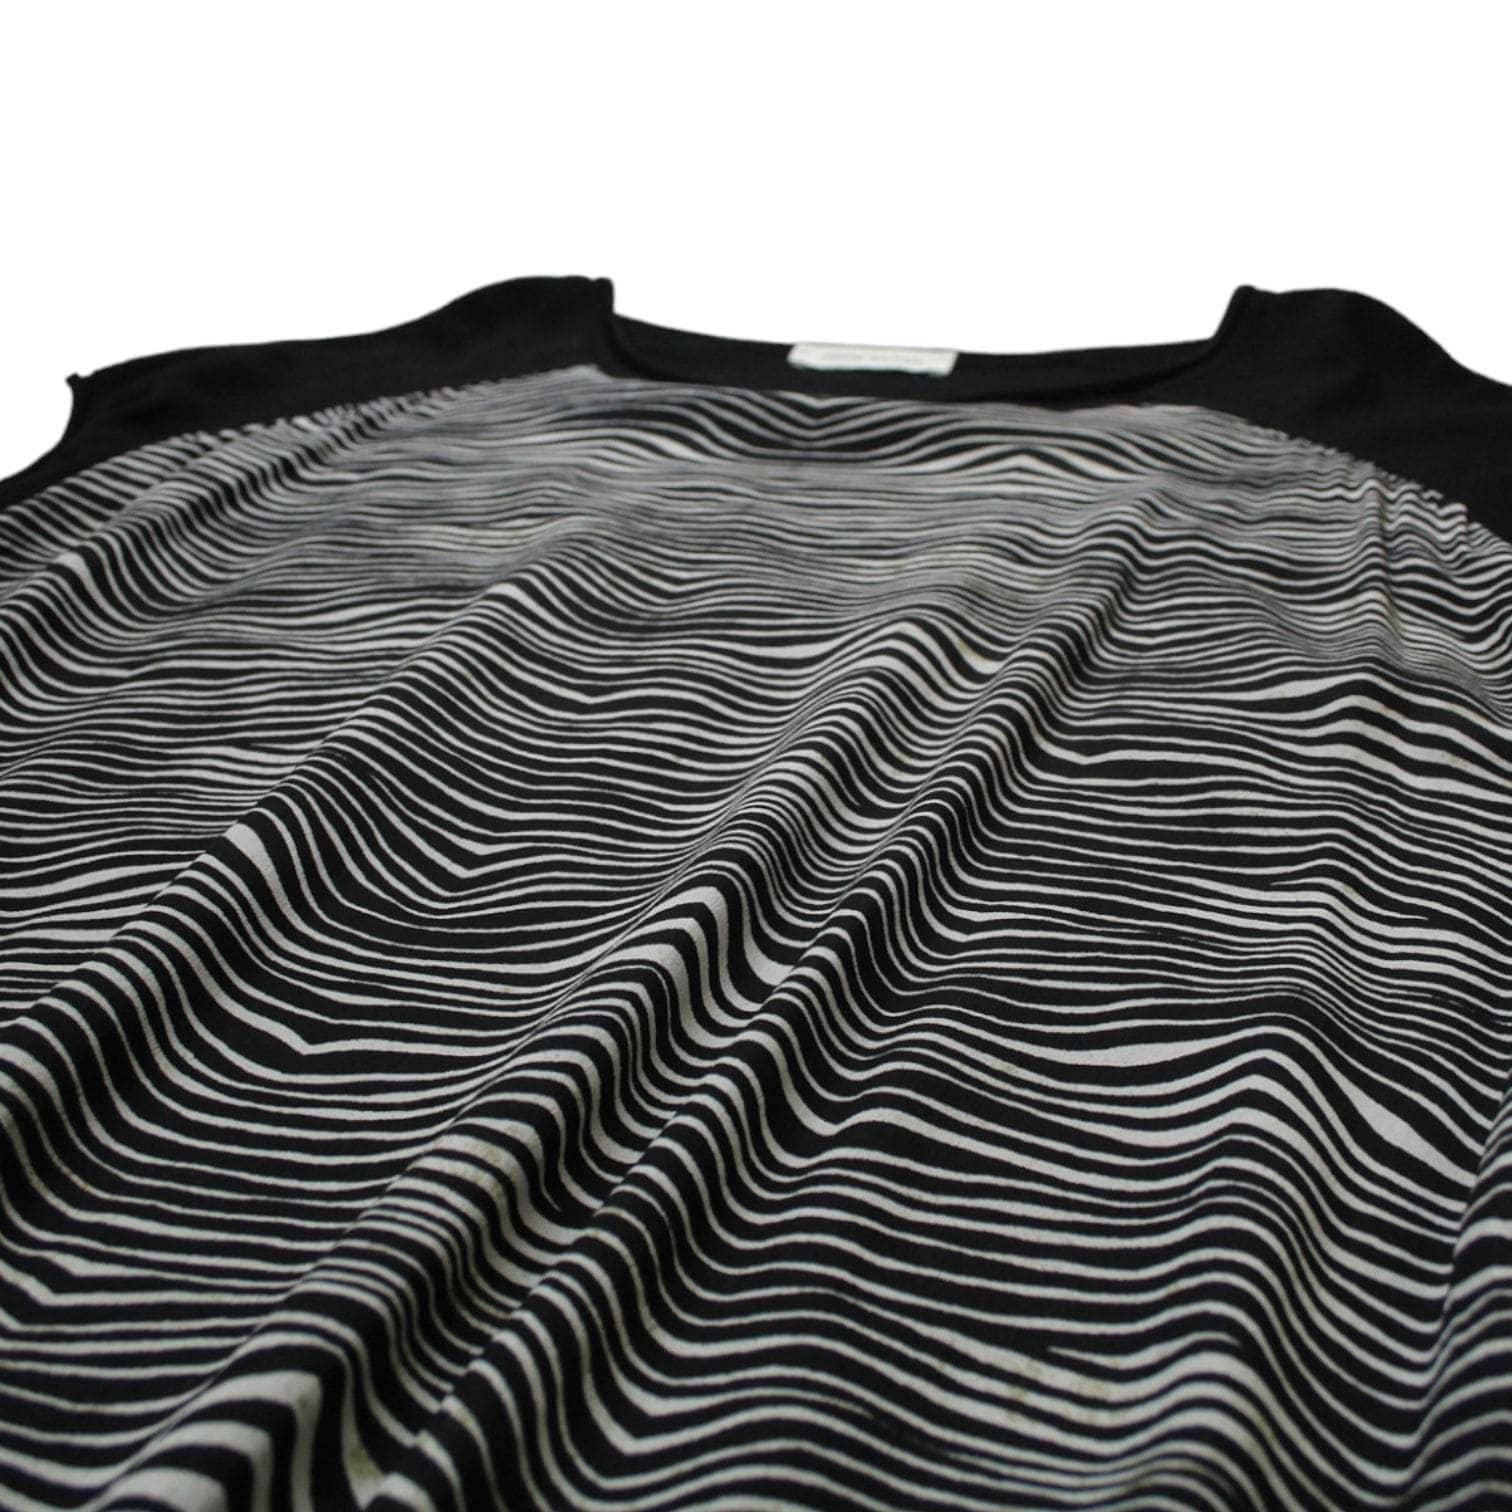 Pierre Balmain Black Zebra Print Knitwear